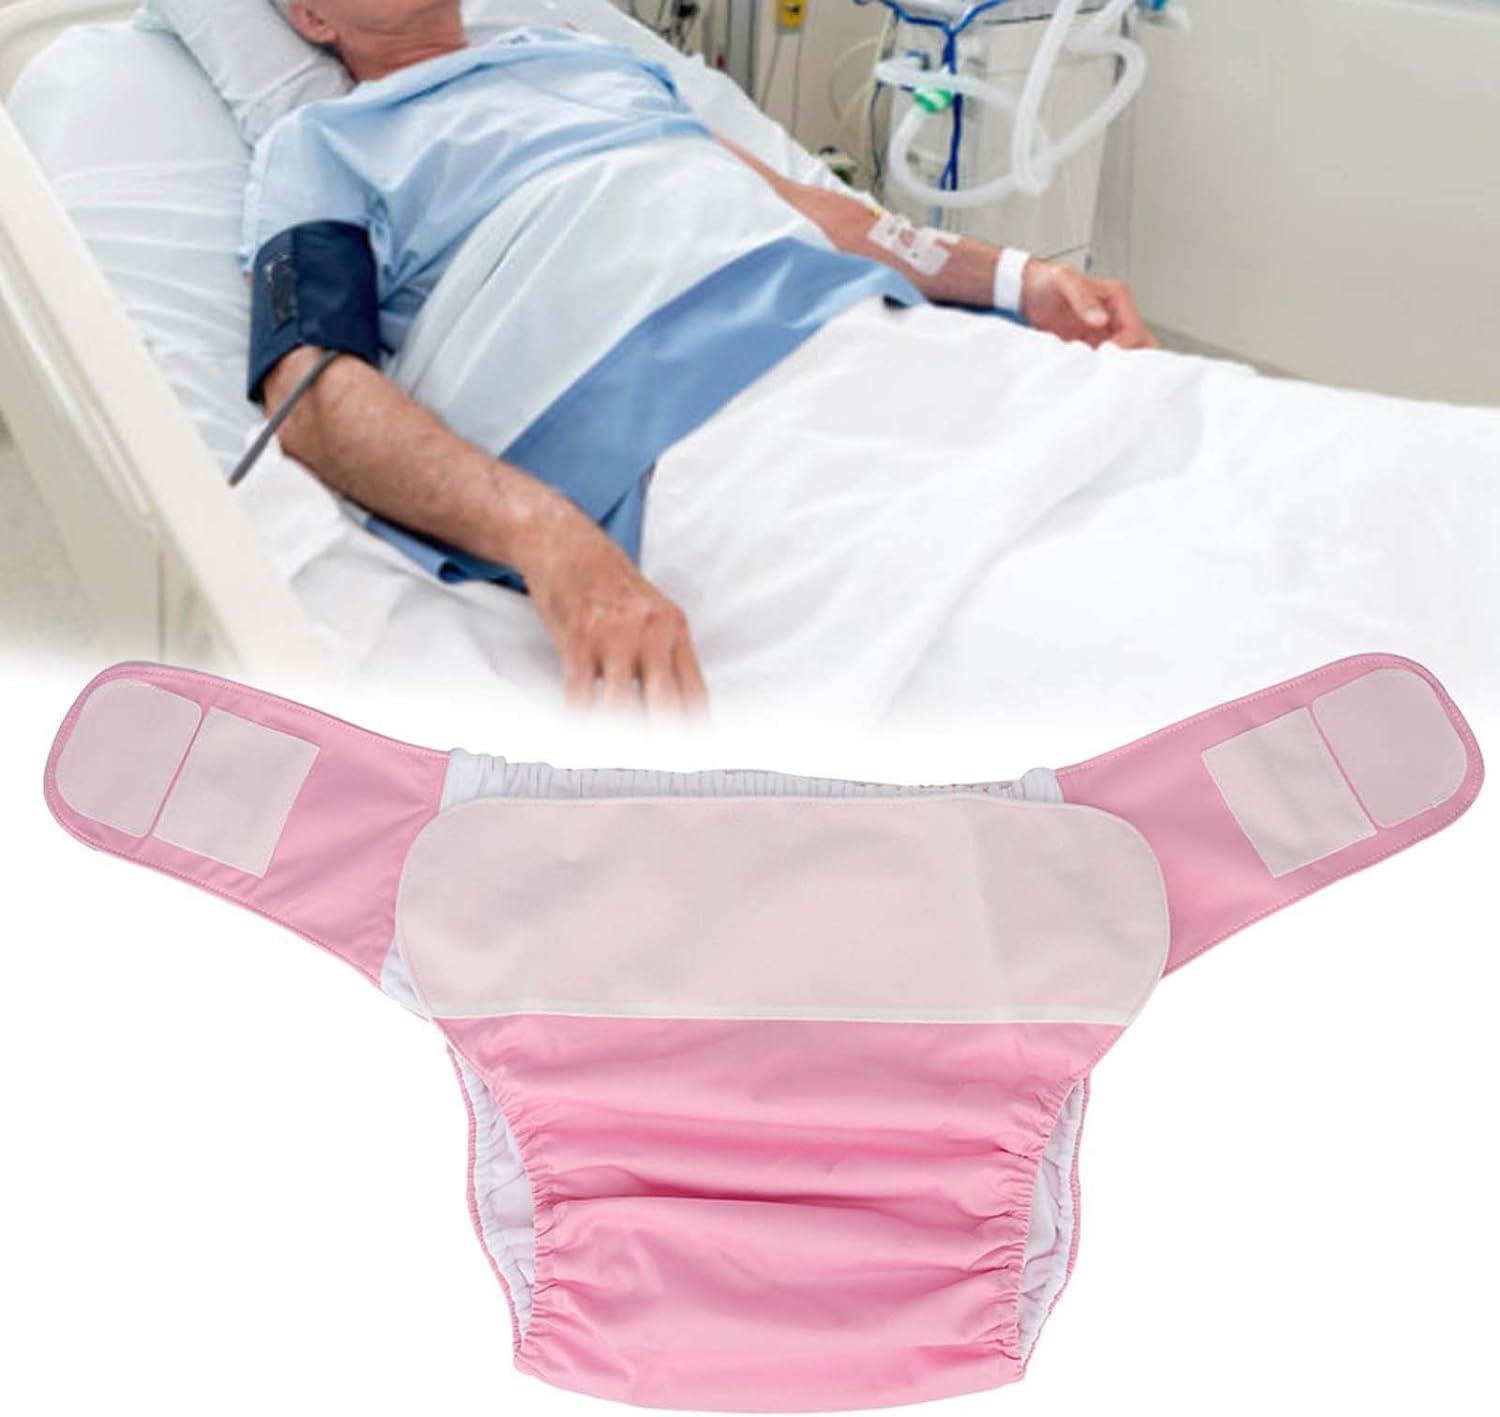 Adult Elderly Waterproof Reusable Cloth Diaper Patients Diapers Pants